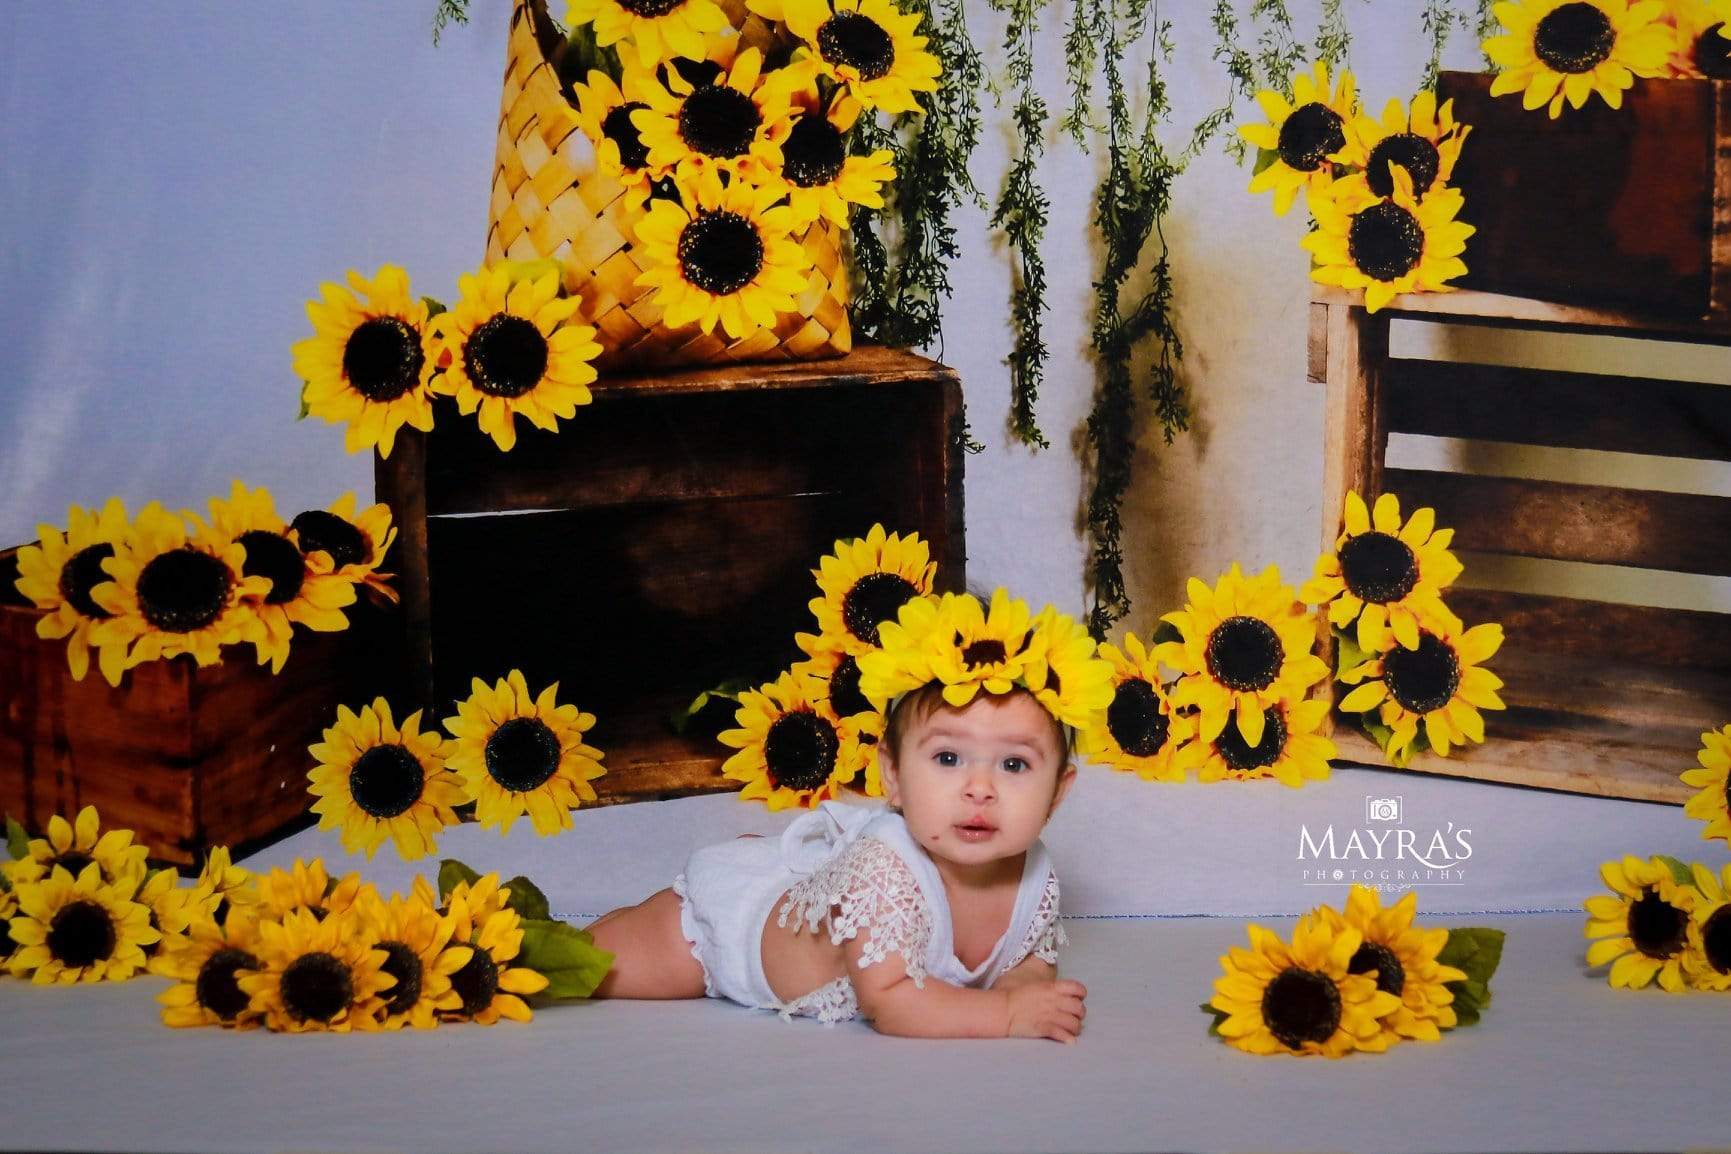 Kate Sunflower Summer Backdrop for Photography Designed by Keerstan Jessop -UK